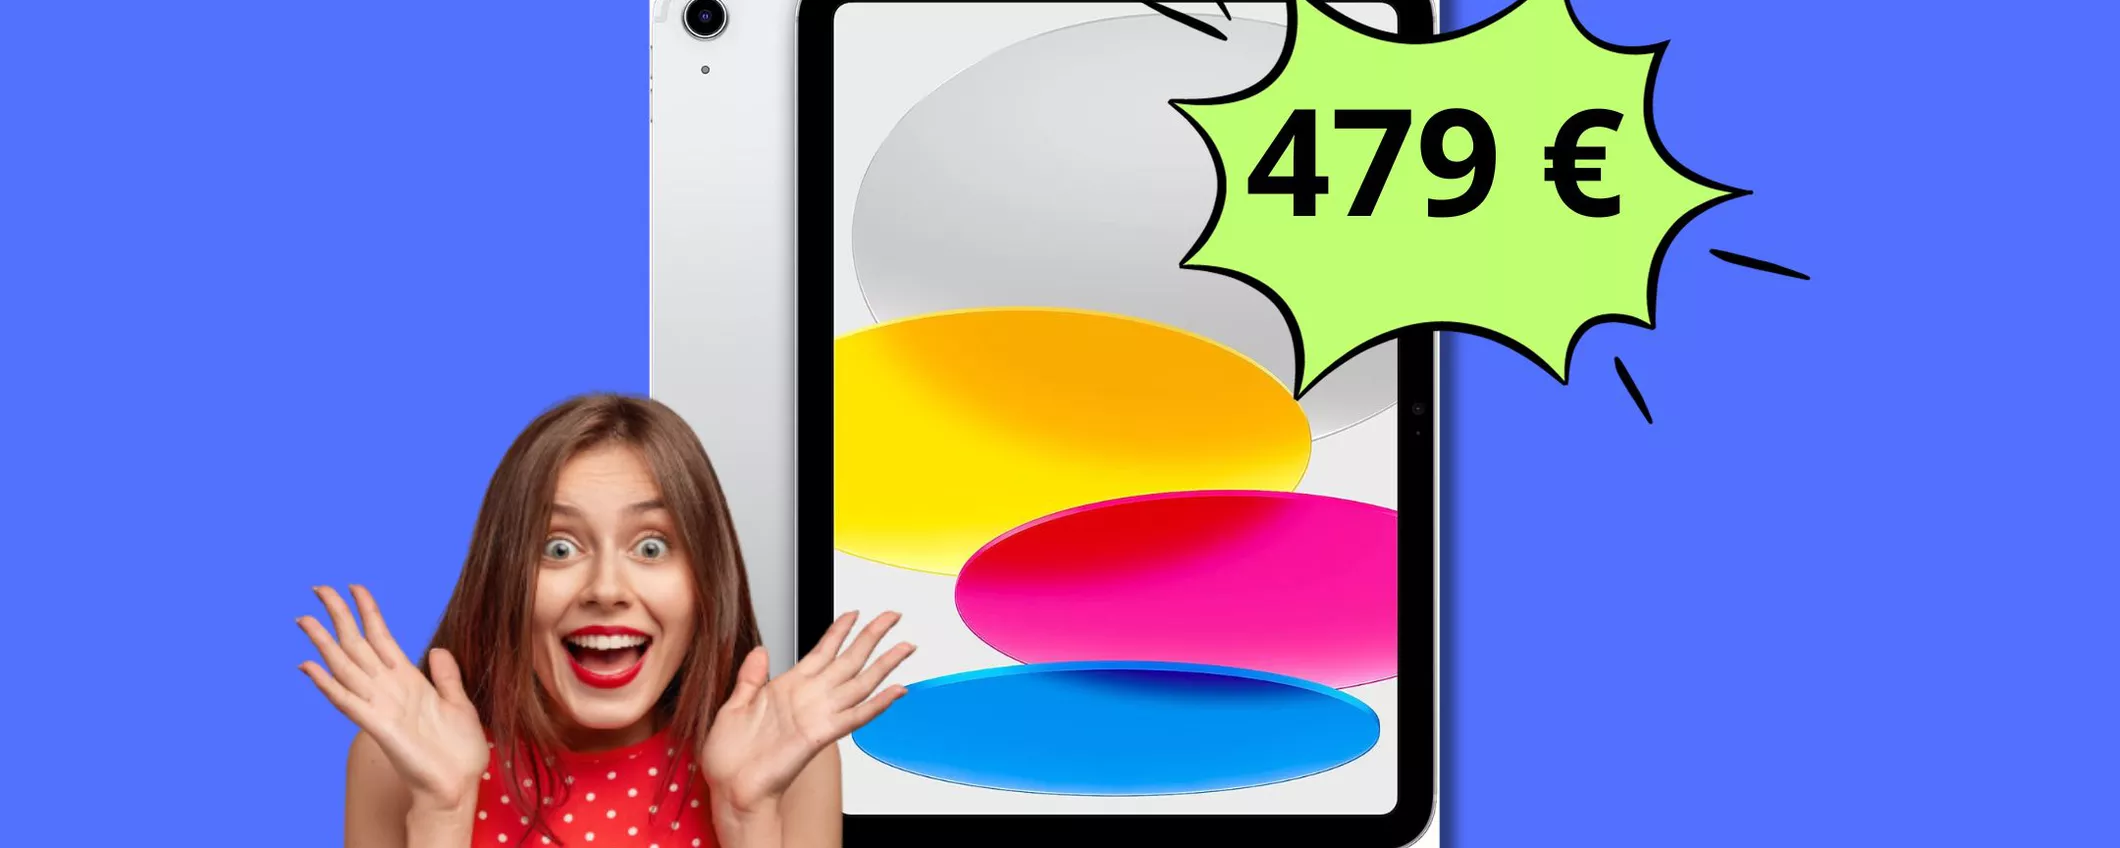 iPad Apple 2022 in OFFERTA: a questo prezzo non lo trovi più!